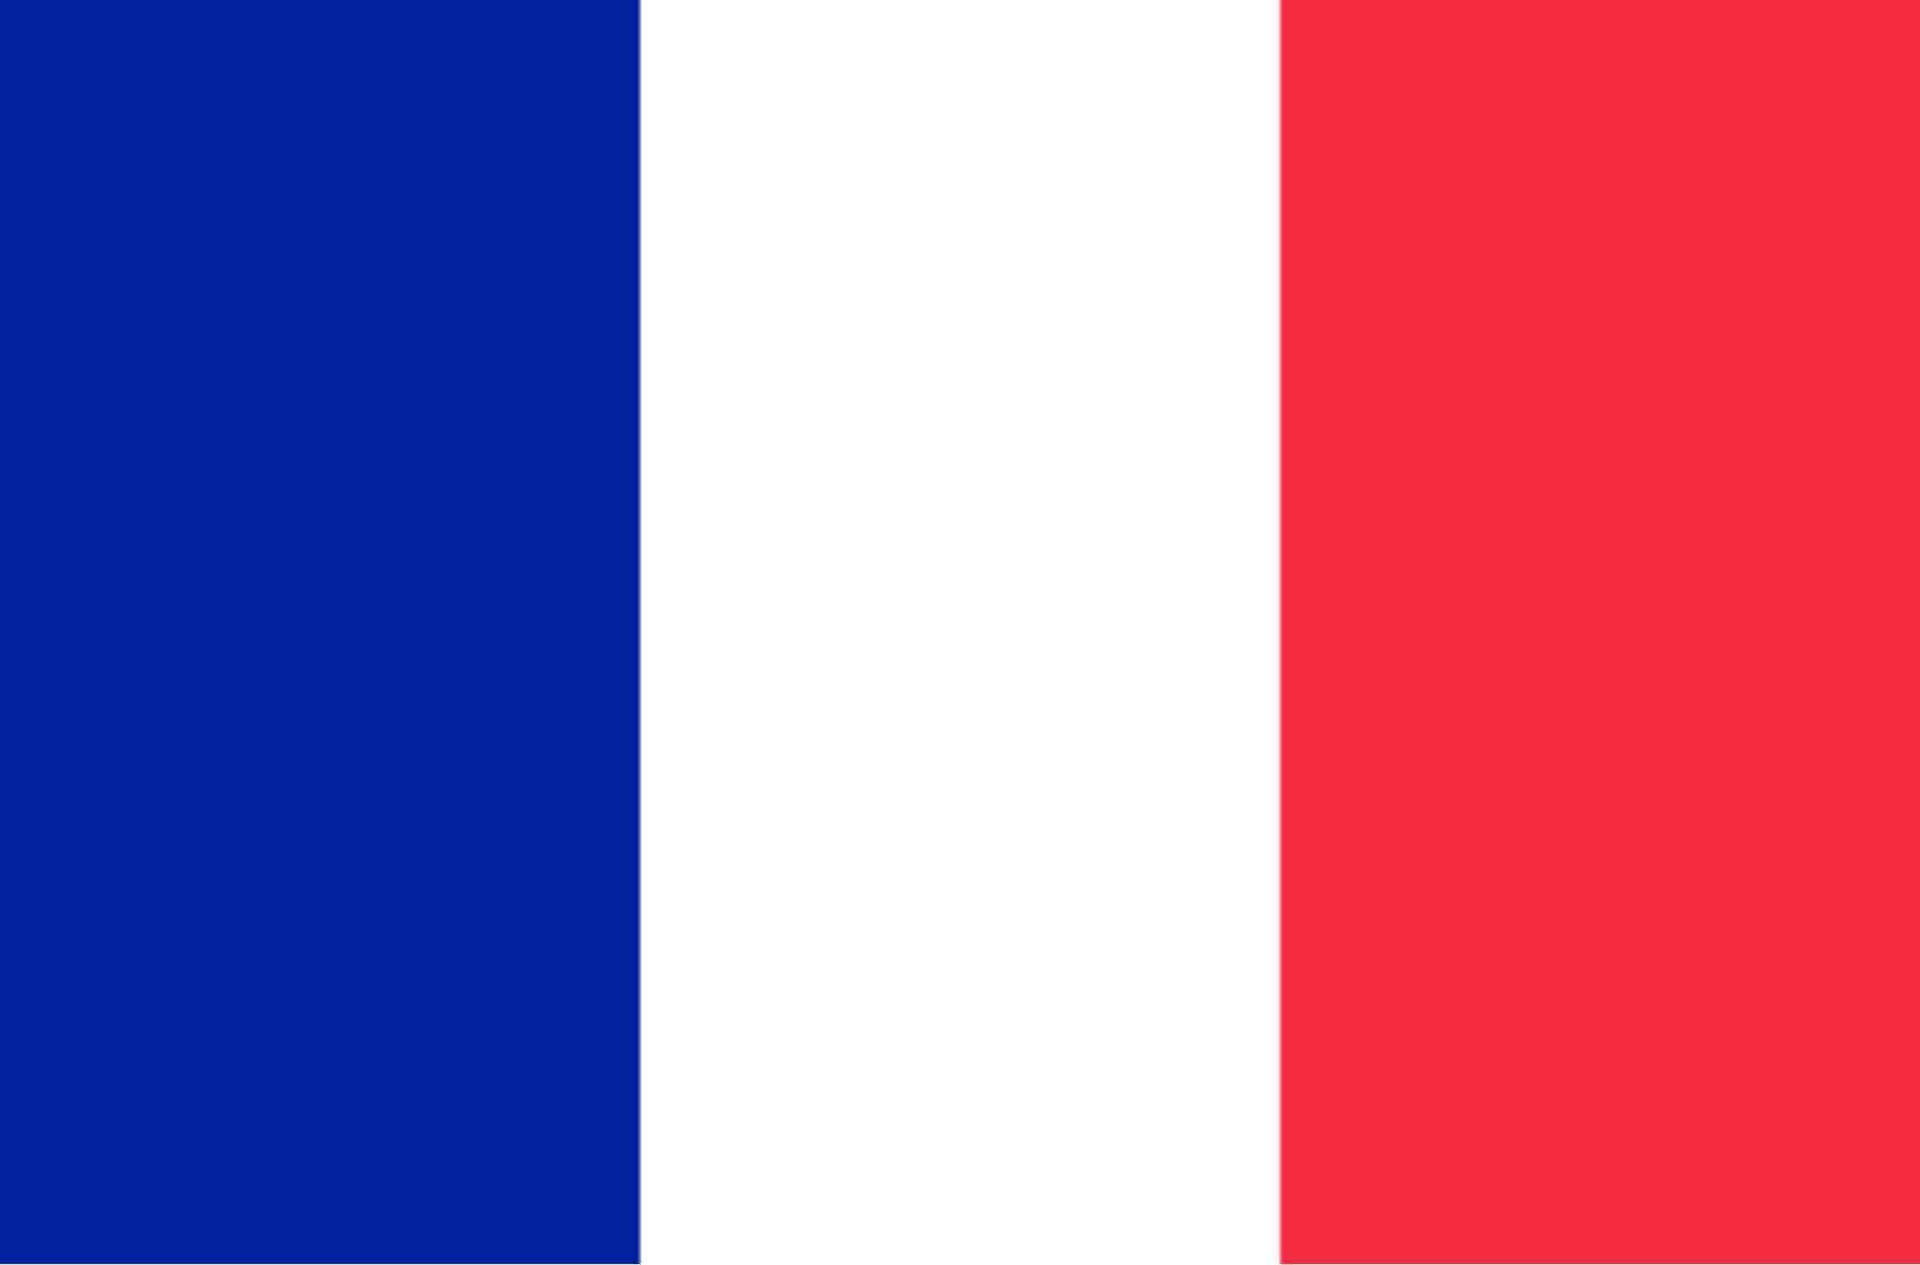 Gleaming French Flag Under Spotlight Wallpaper